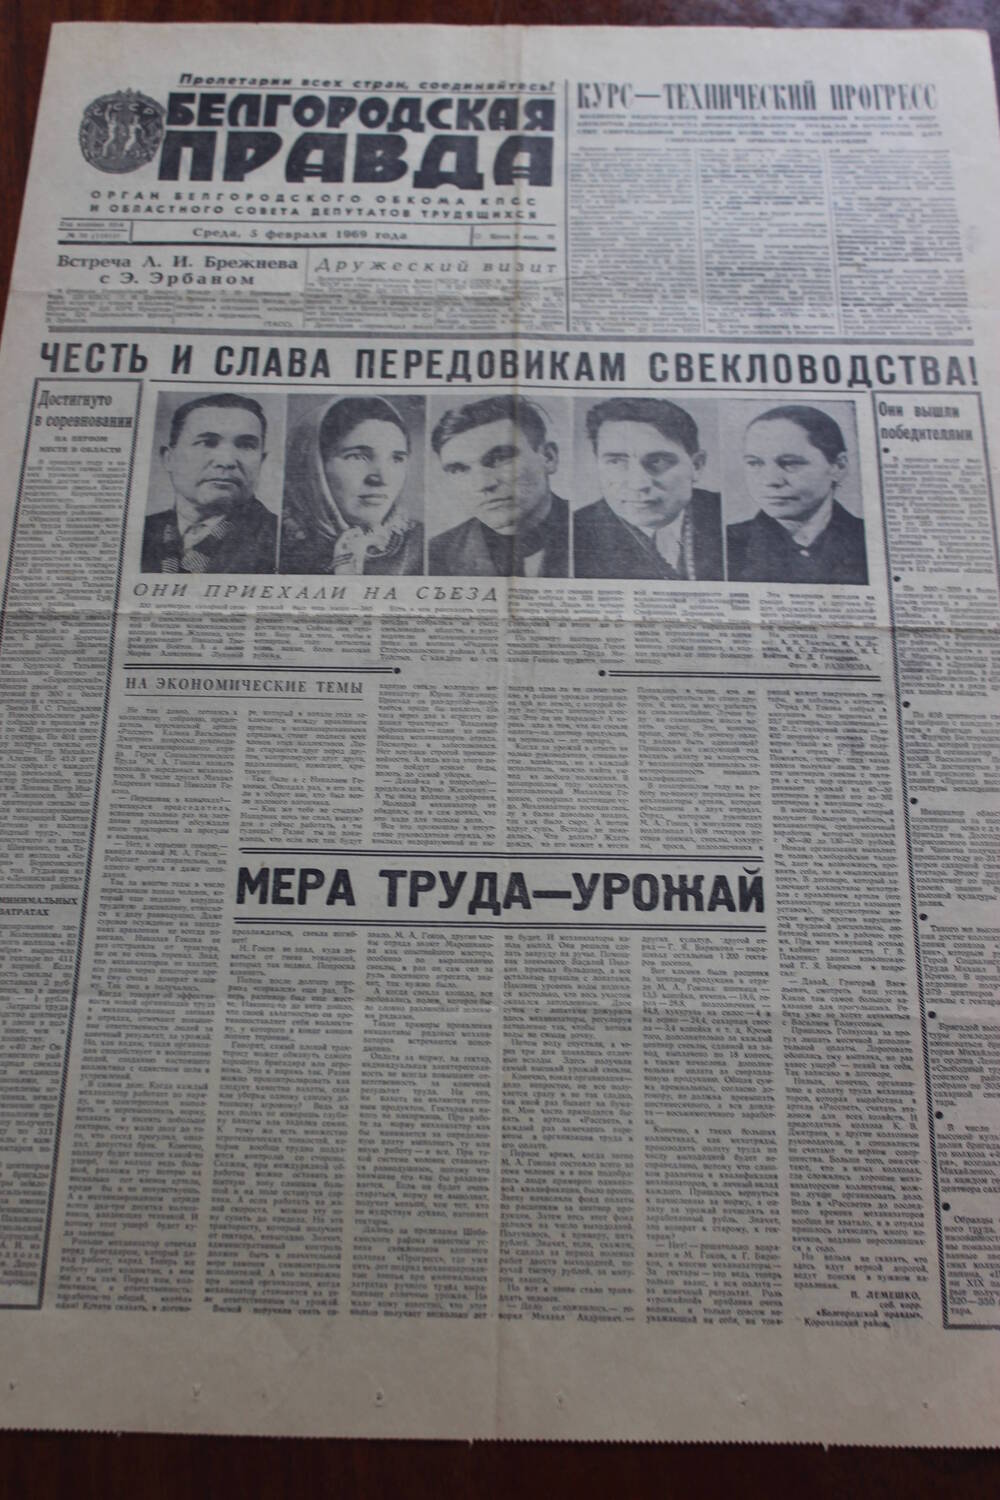 Газета.
Белгородская правда № 30 (11811) от 5 февраля 1969 г.